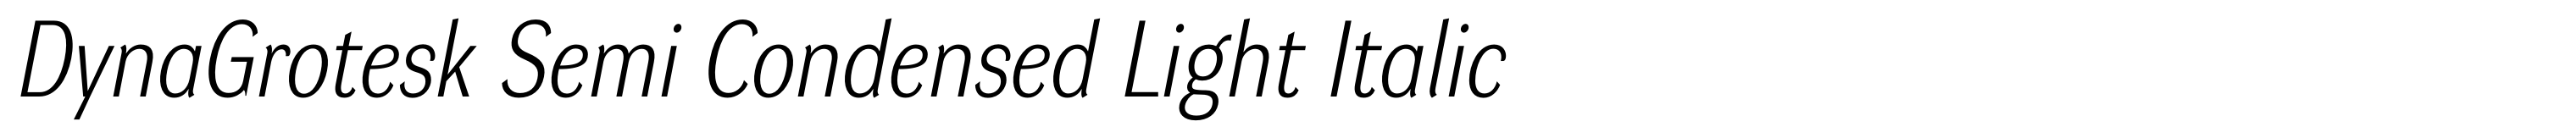 DynaGrotesk Semi Condensed Light Italic